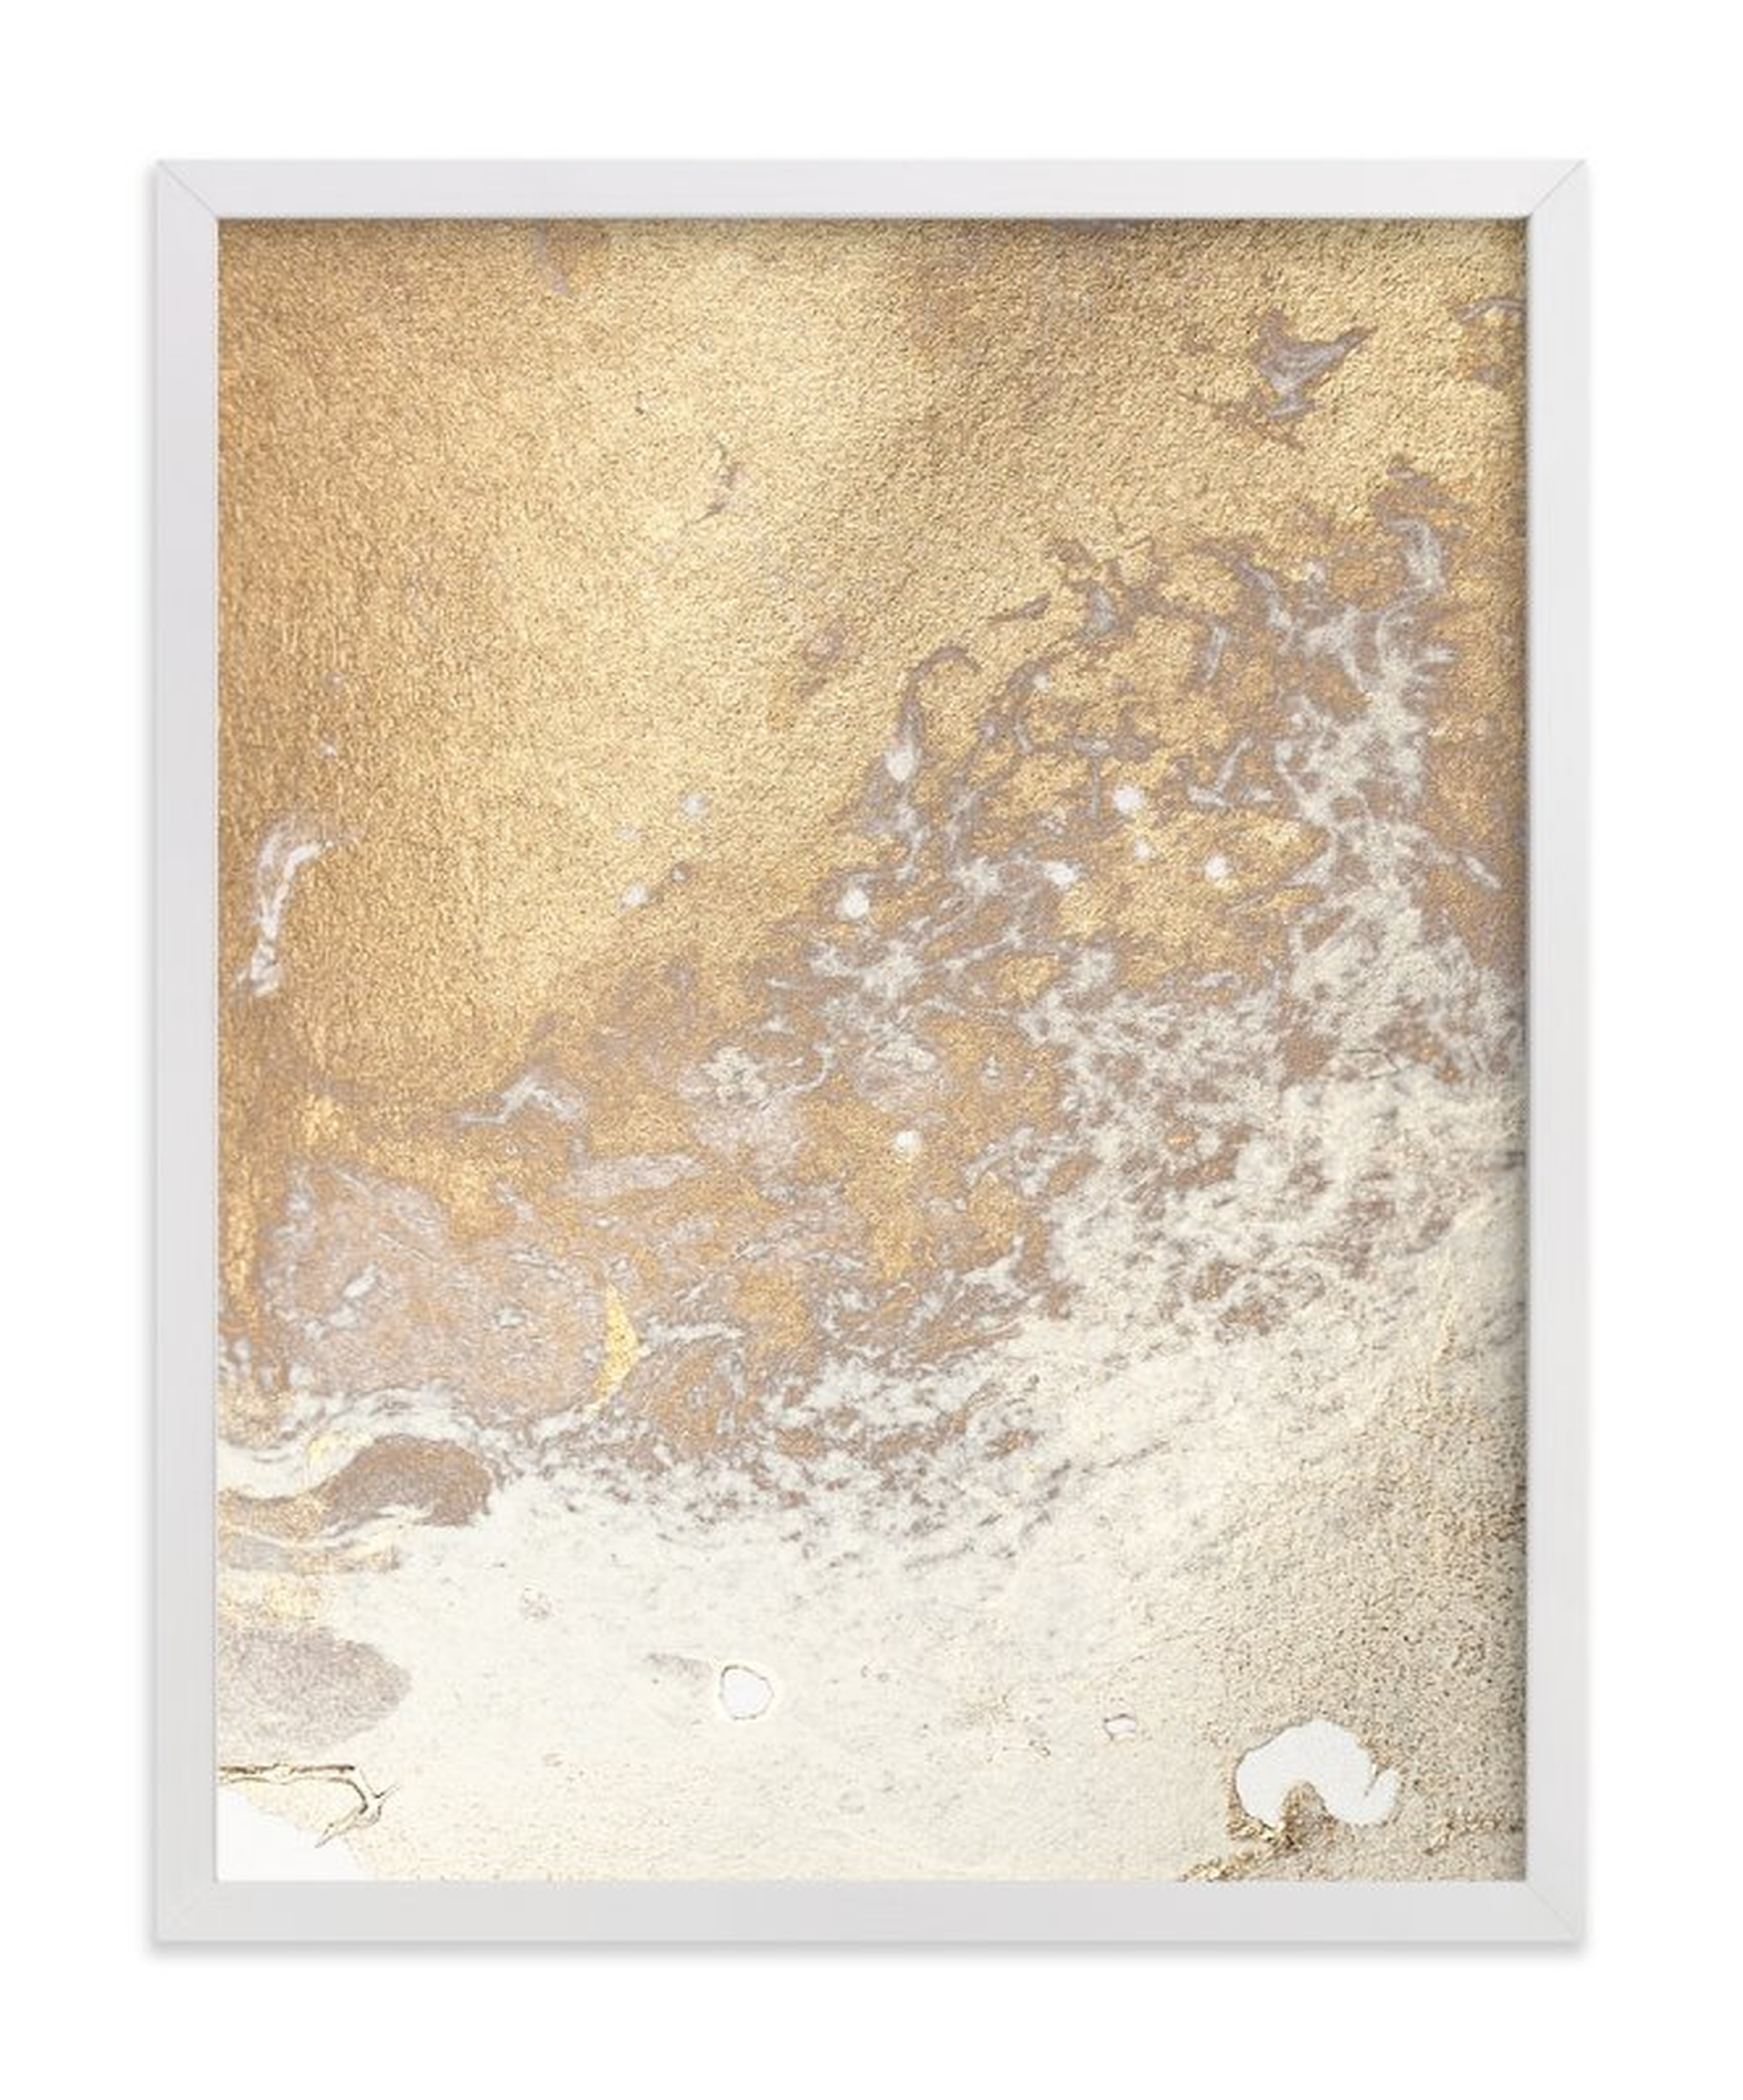 Aurum sand no. 3 -  11" x 14" - Minted